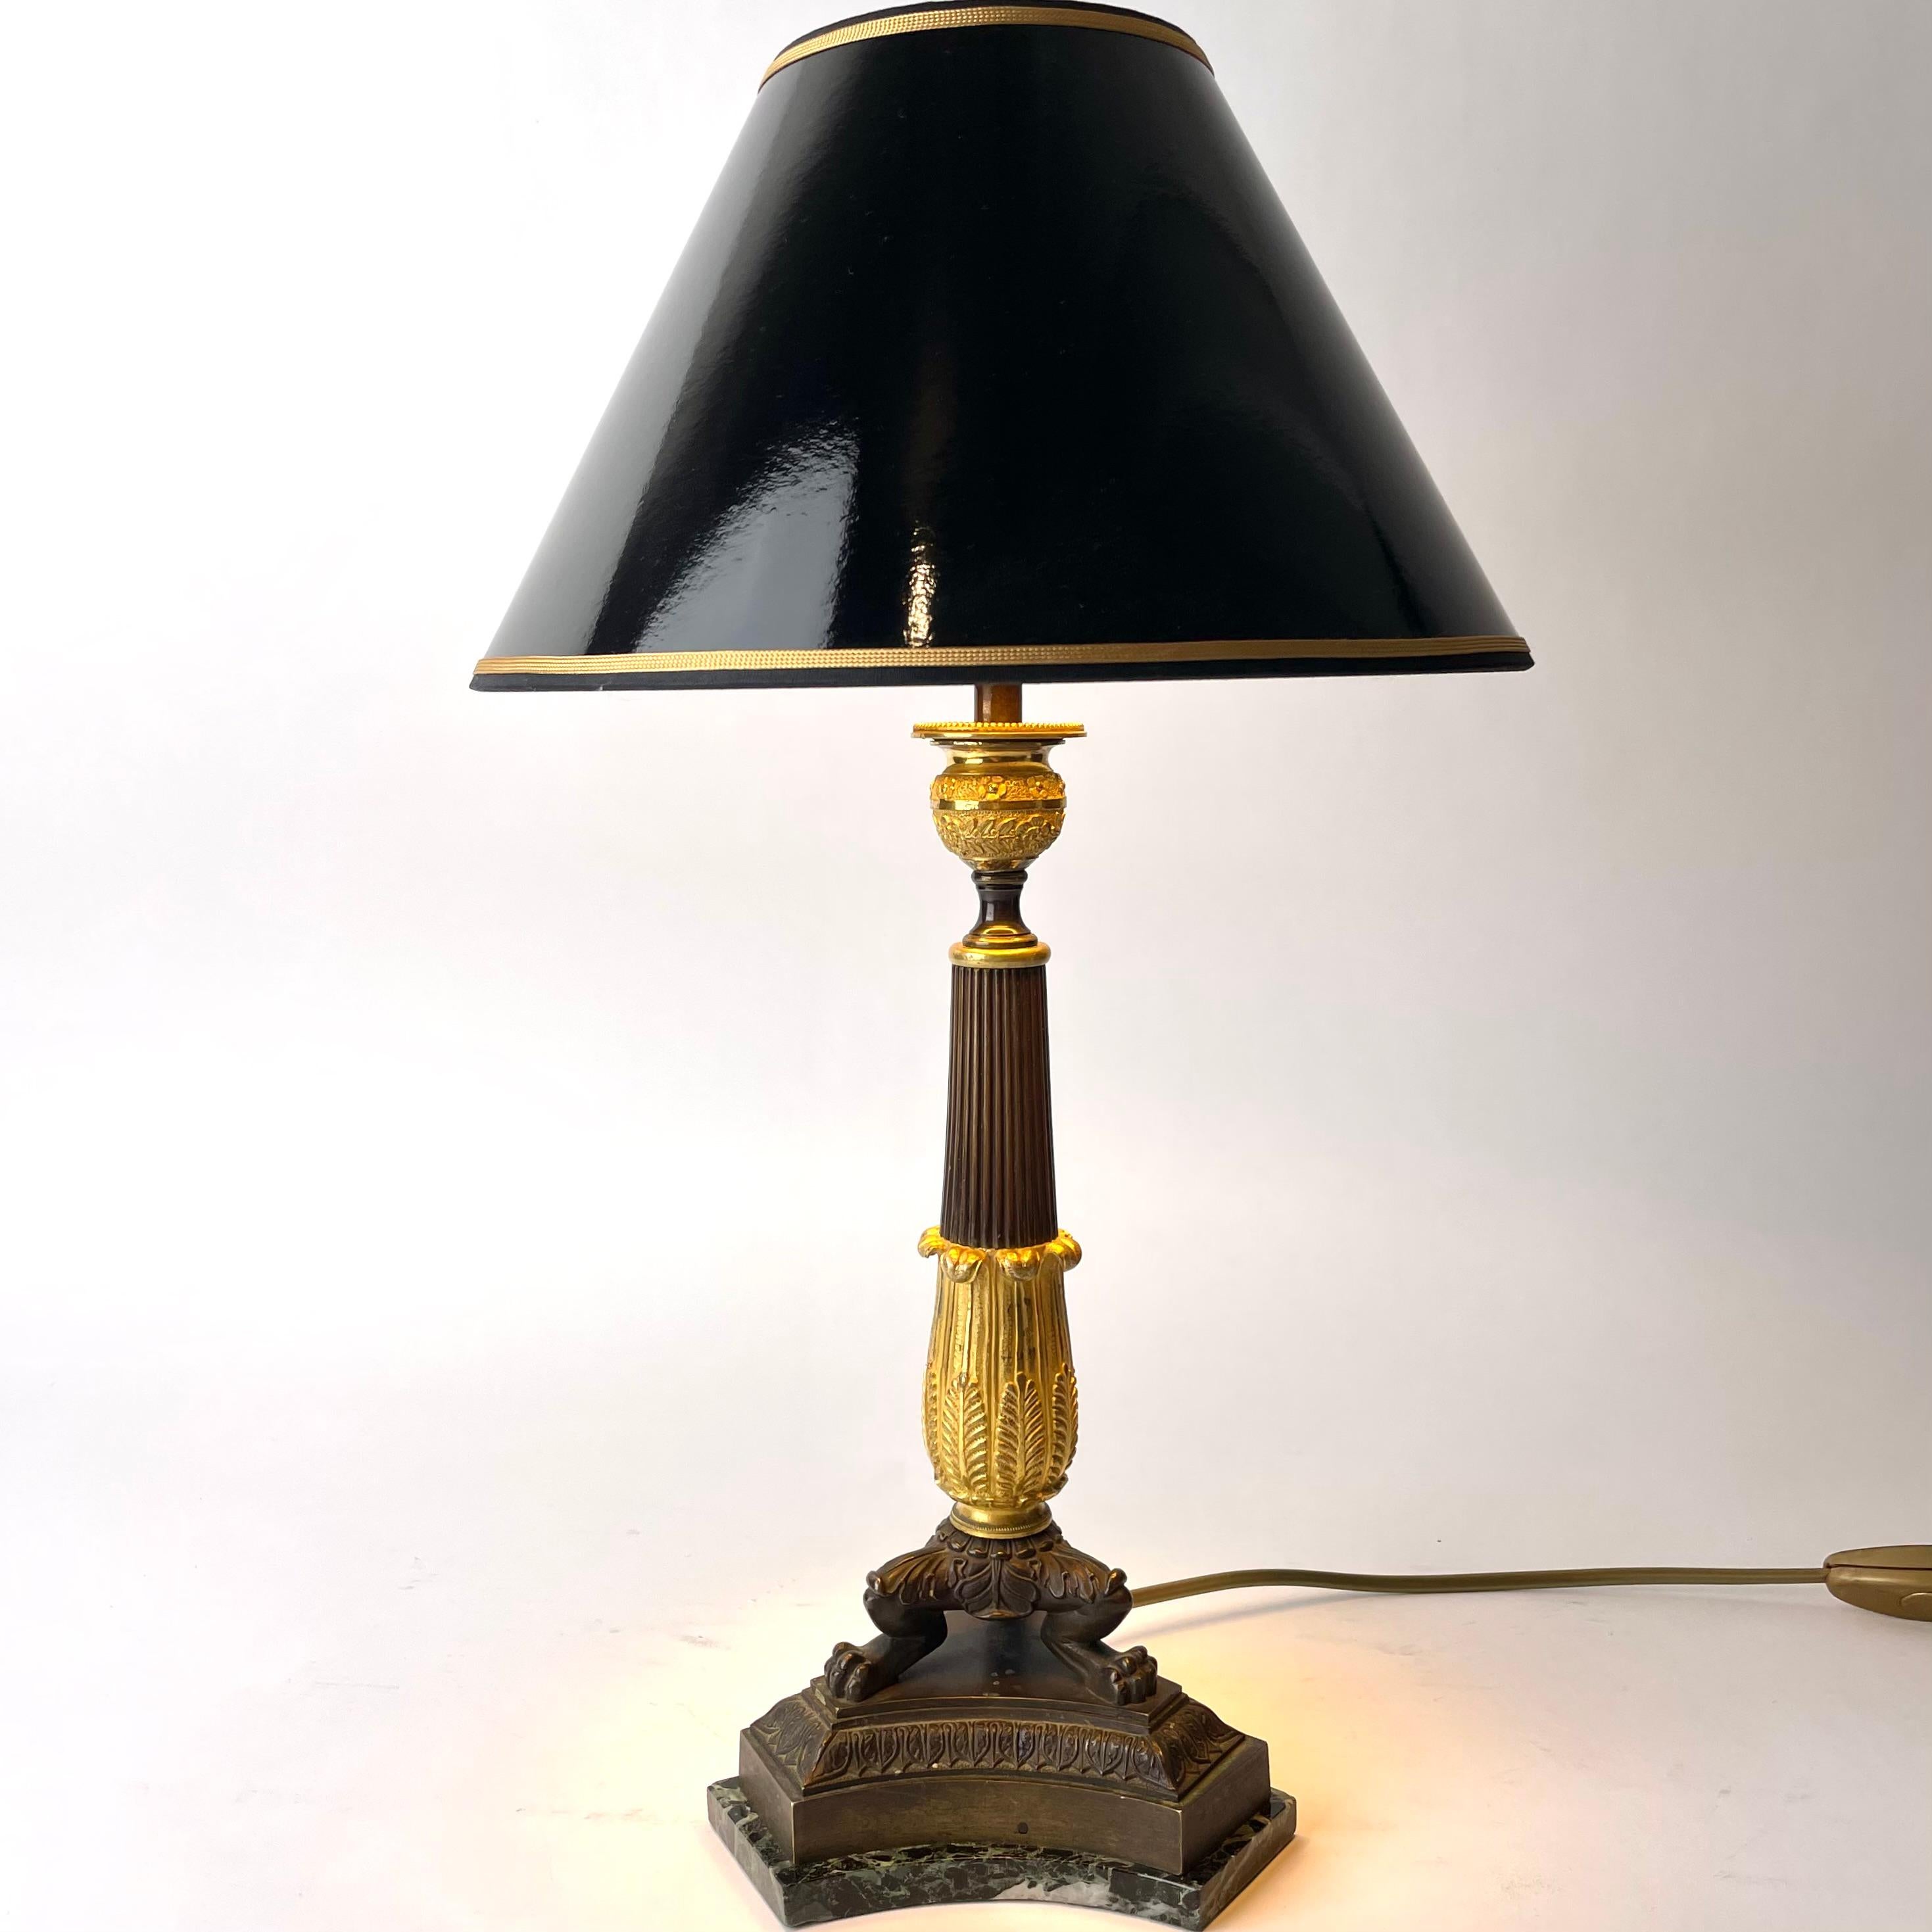 Elegante Tischleuchte aus vergoldeter und dunkel patinierter Bronze mit einem Sockel aus Marmor. Empire, entstanden in den 1820er Jahren. Ursprünglich ein Empire-Leuchter, der Anfang des 20. Jahrhunderts in eine Tischlampe umgewandelt wurde.

Neu